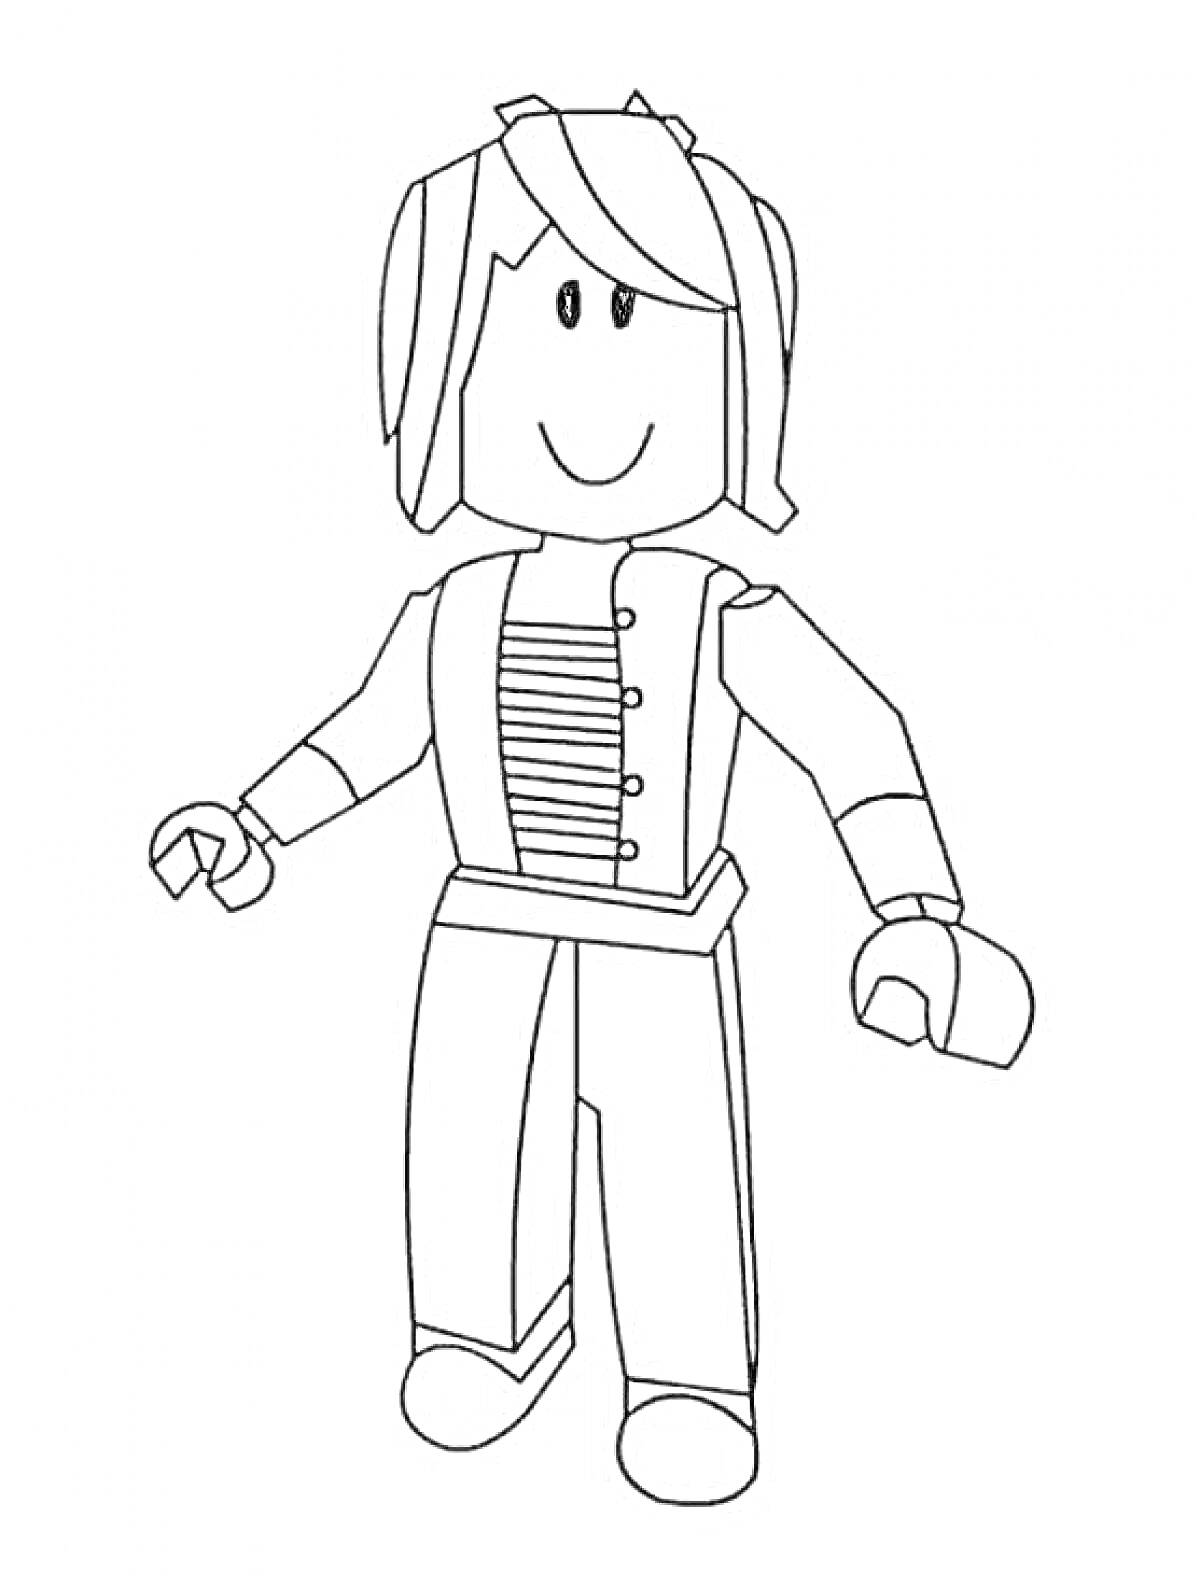 Раскраска Девочка из Роблокс в куртке с пуговицами и полосками, с длинными волосами и улыбающимся лицом